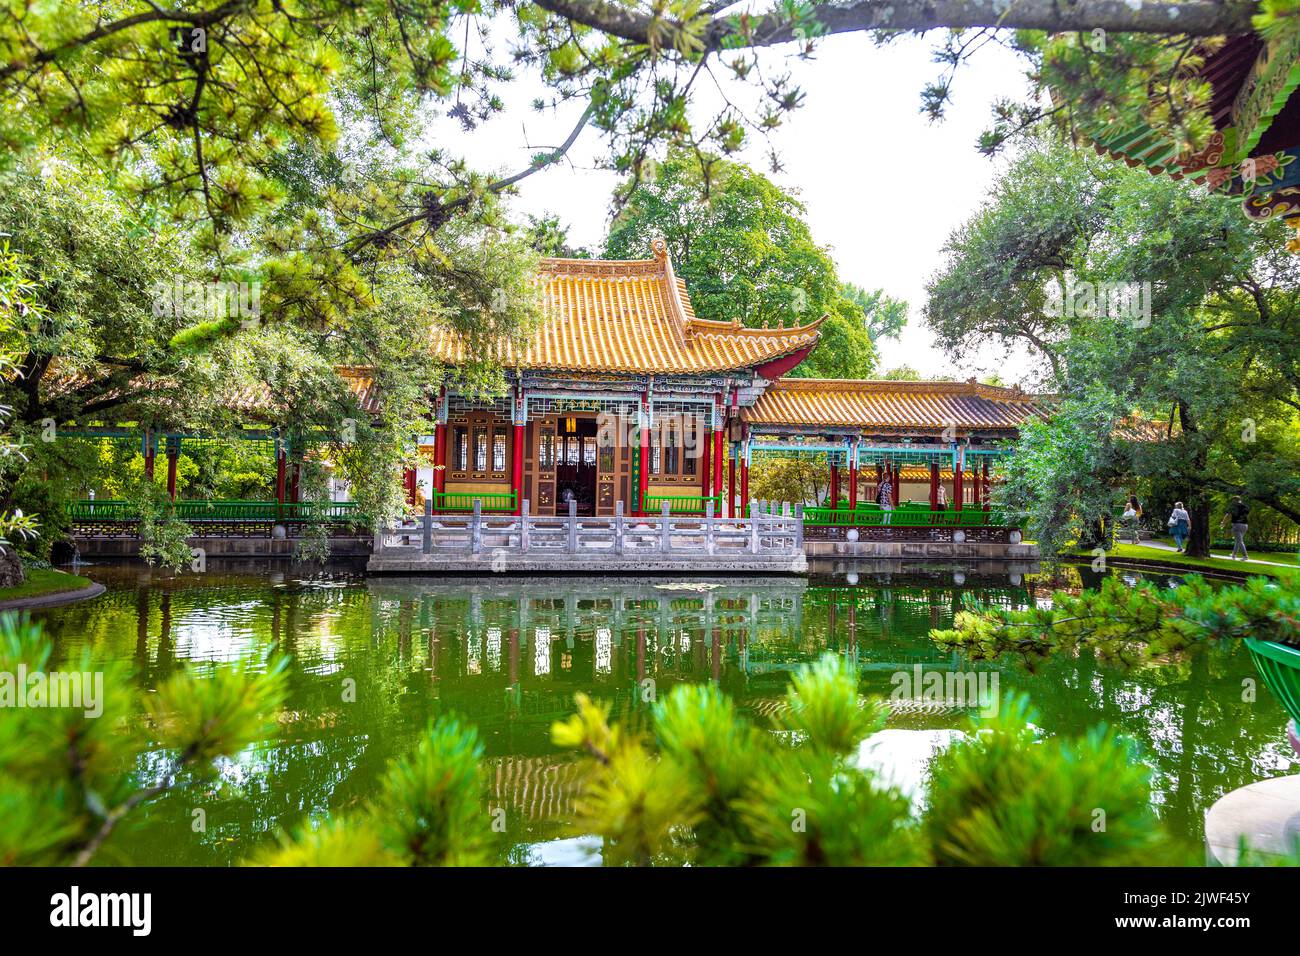 Pavillon chinois coloré donnant sur un étang au jardin de Chine (Chinagarten Zürich), Seefeld, Zurich, Suisse Banque D'Images